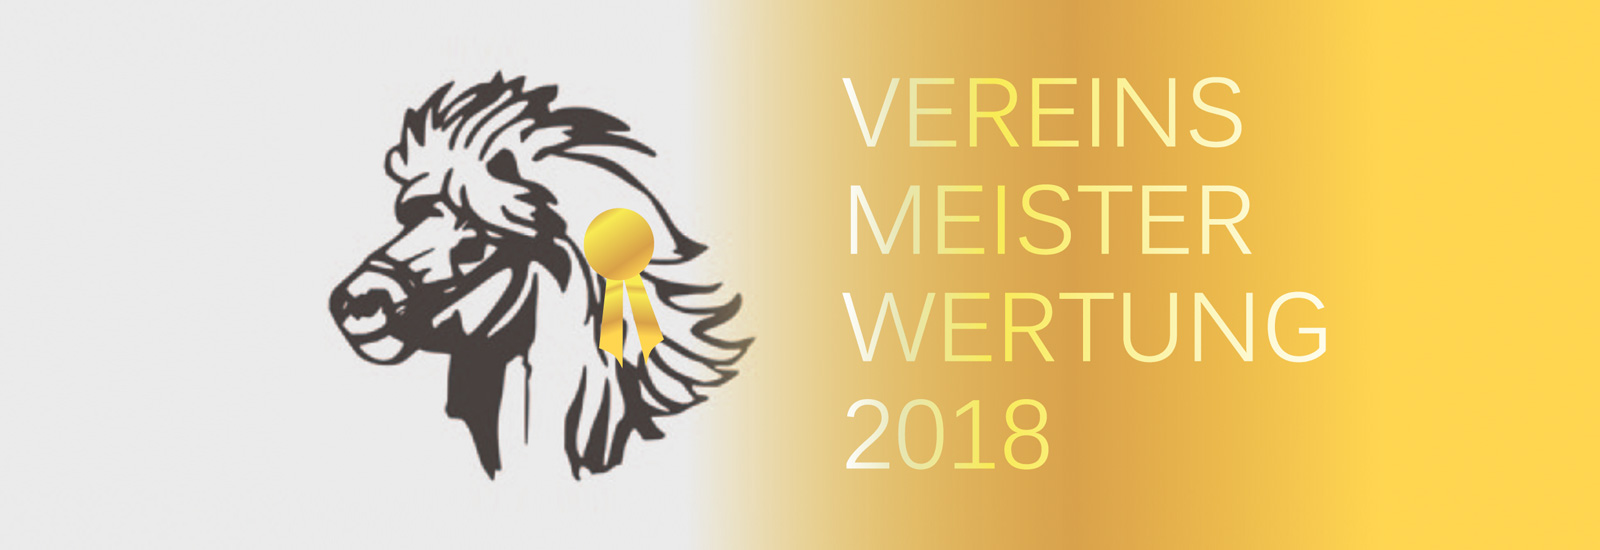 Vereinsmeisterwertung 2018 IPZV-Nordbayern